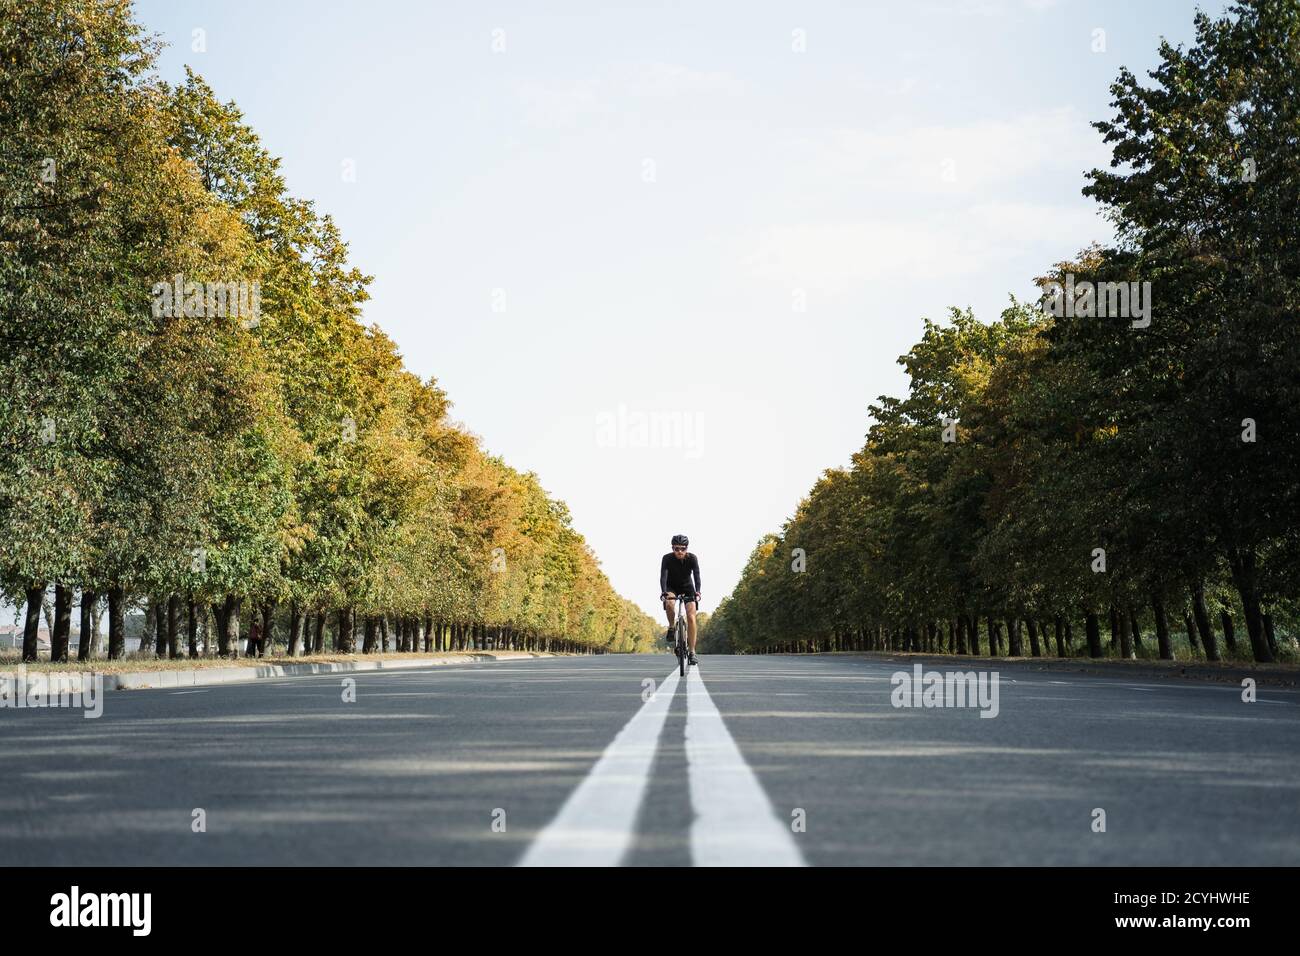 L'uomo guida una bici di ghiaia nella corsia centrale della strada. Ciclista ben attrezzata su una bicicletta moderna all'aperto, immagine simmetrica Foto Stock